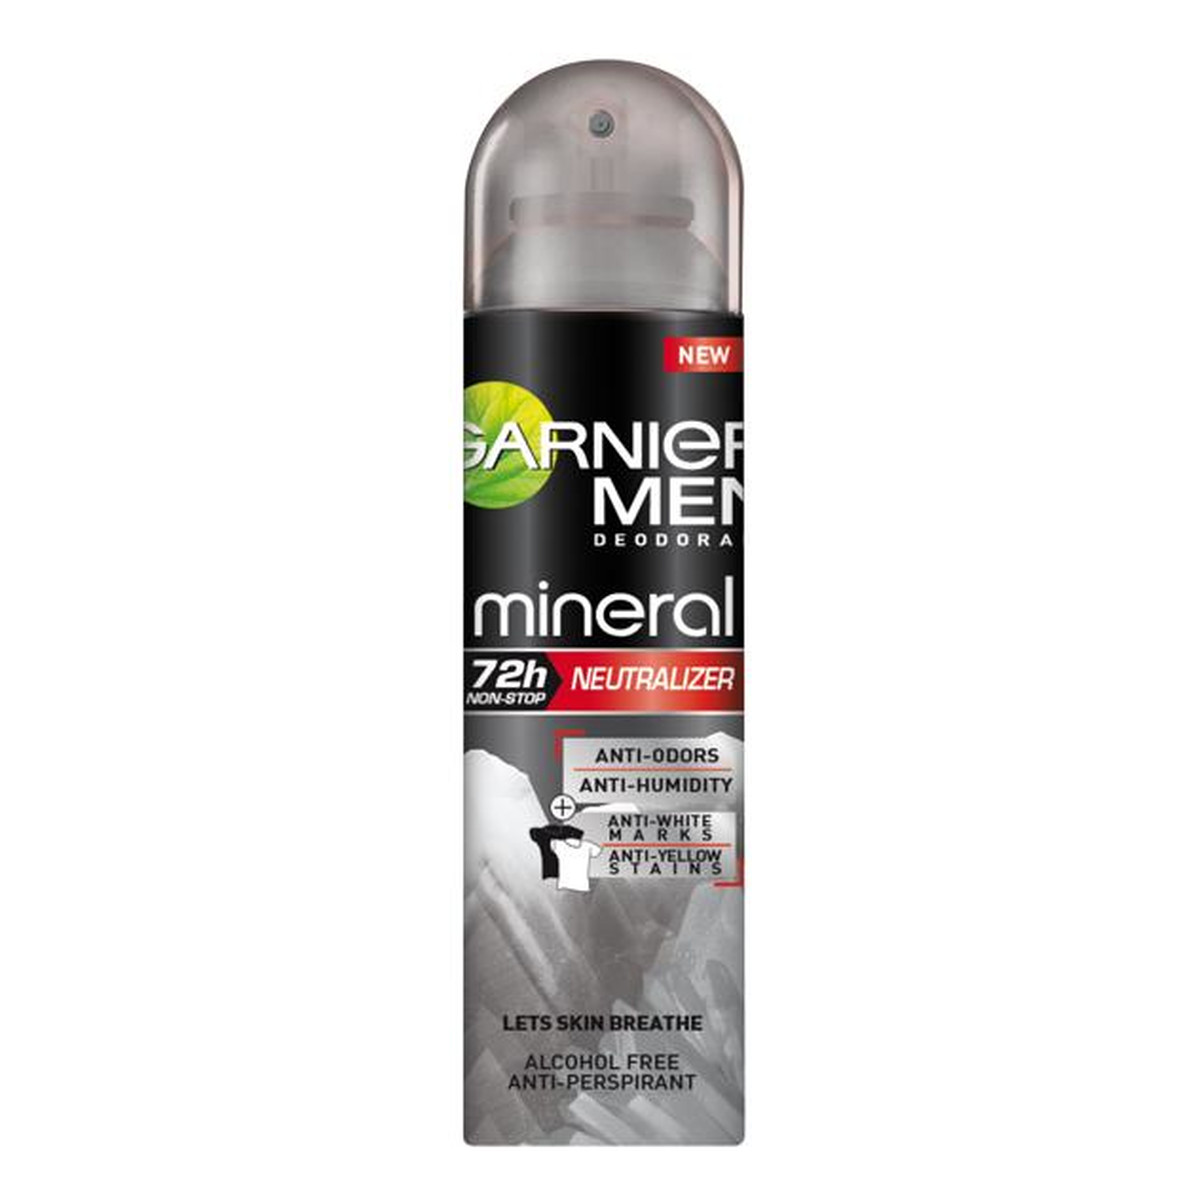 Garnier Mineral Neutralizer 72h Dezodorant 150ml